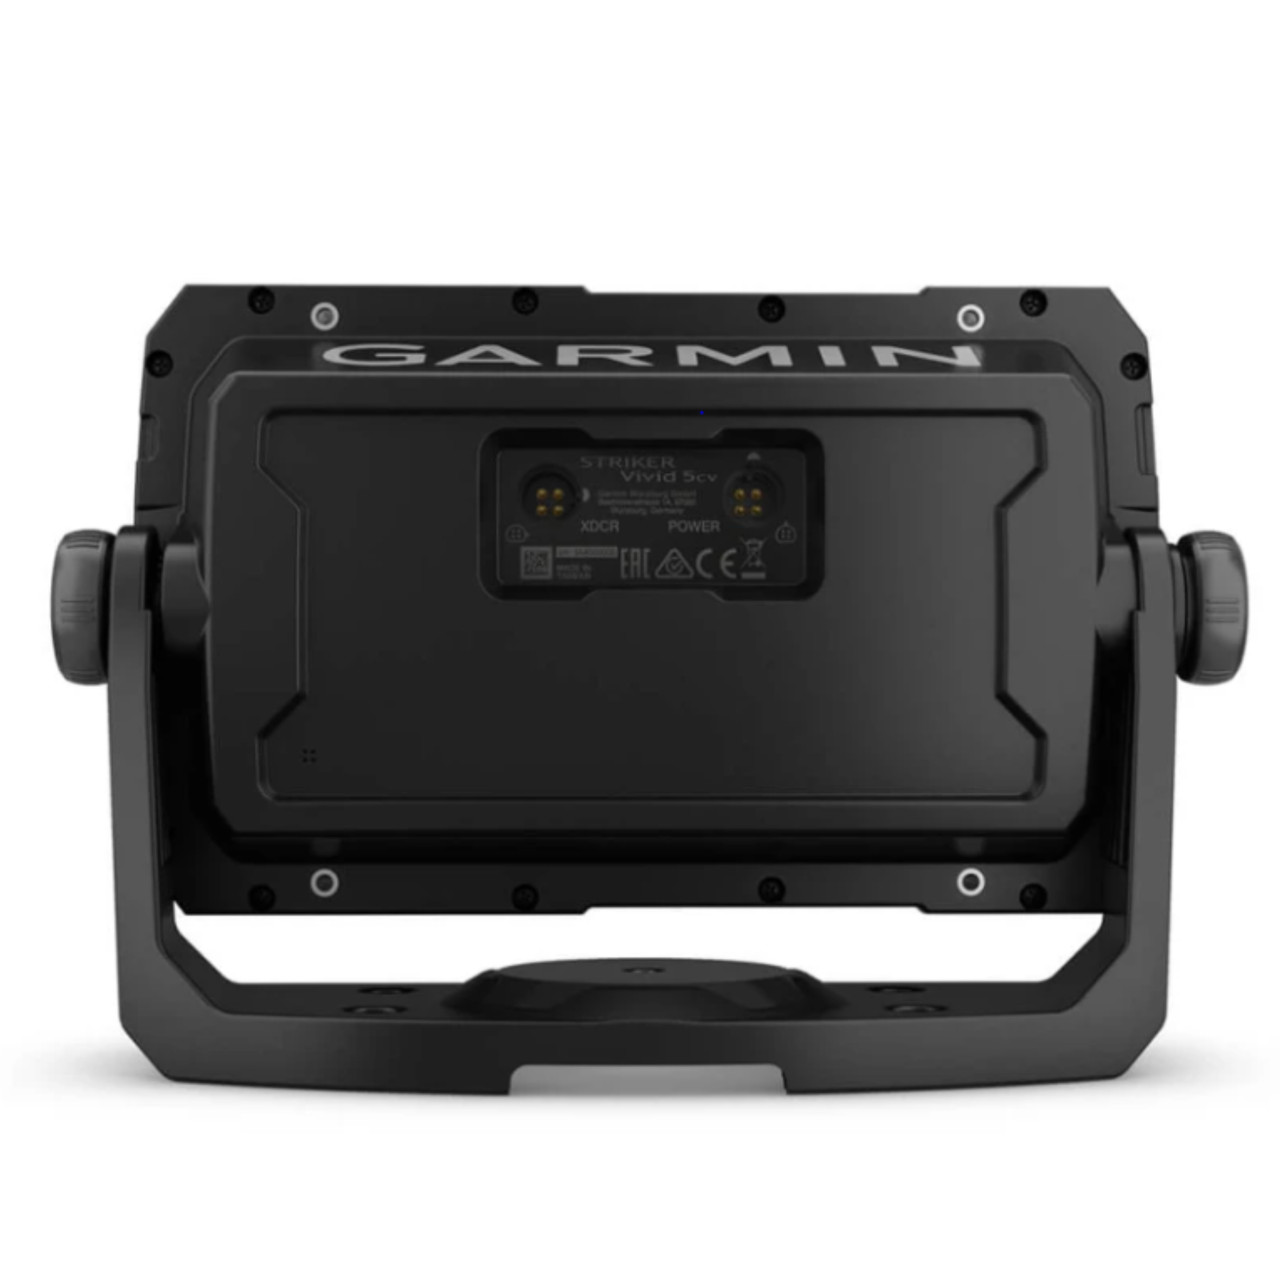 Garmin New OEM STRIKER™ Vivid 5cv With GT20-TM Transducer, 010-02551-00